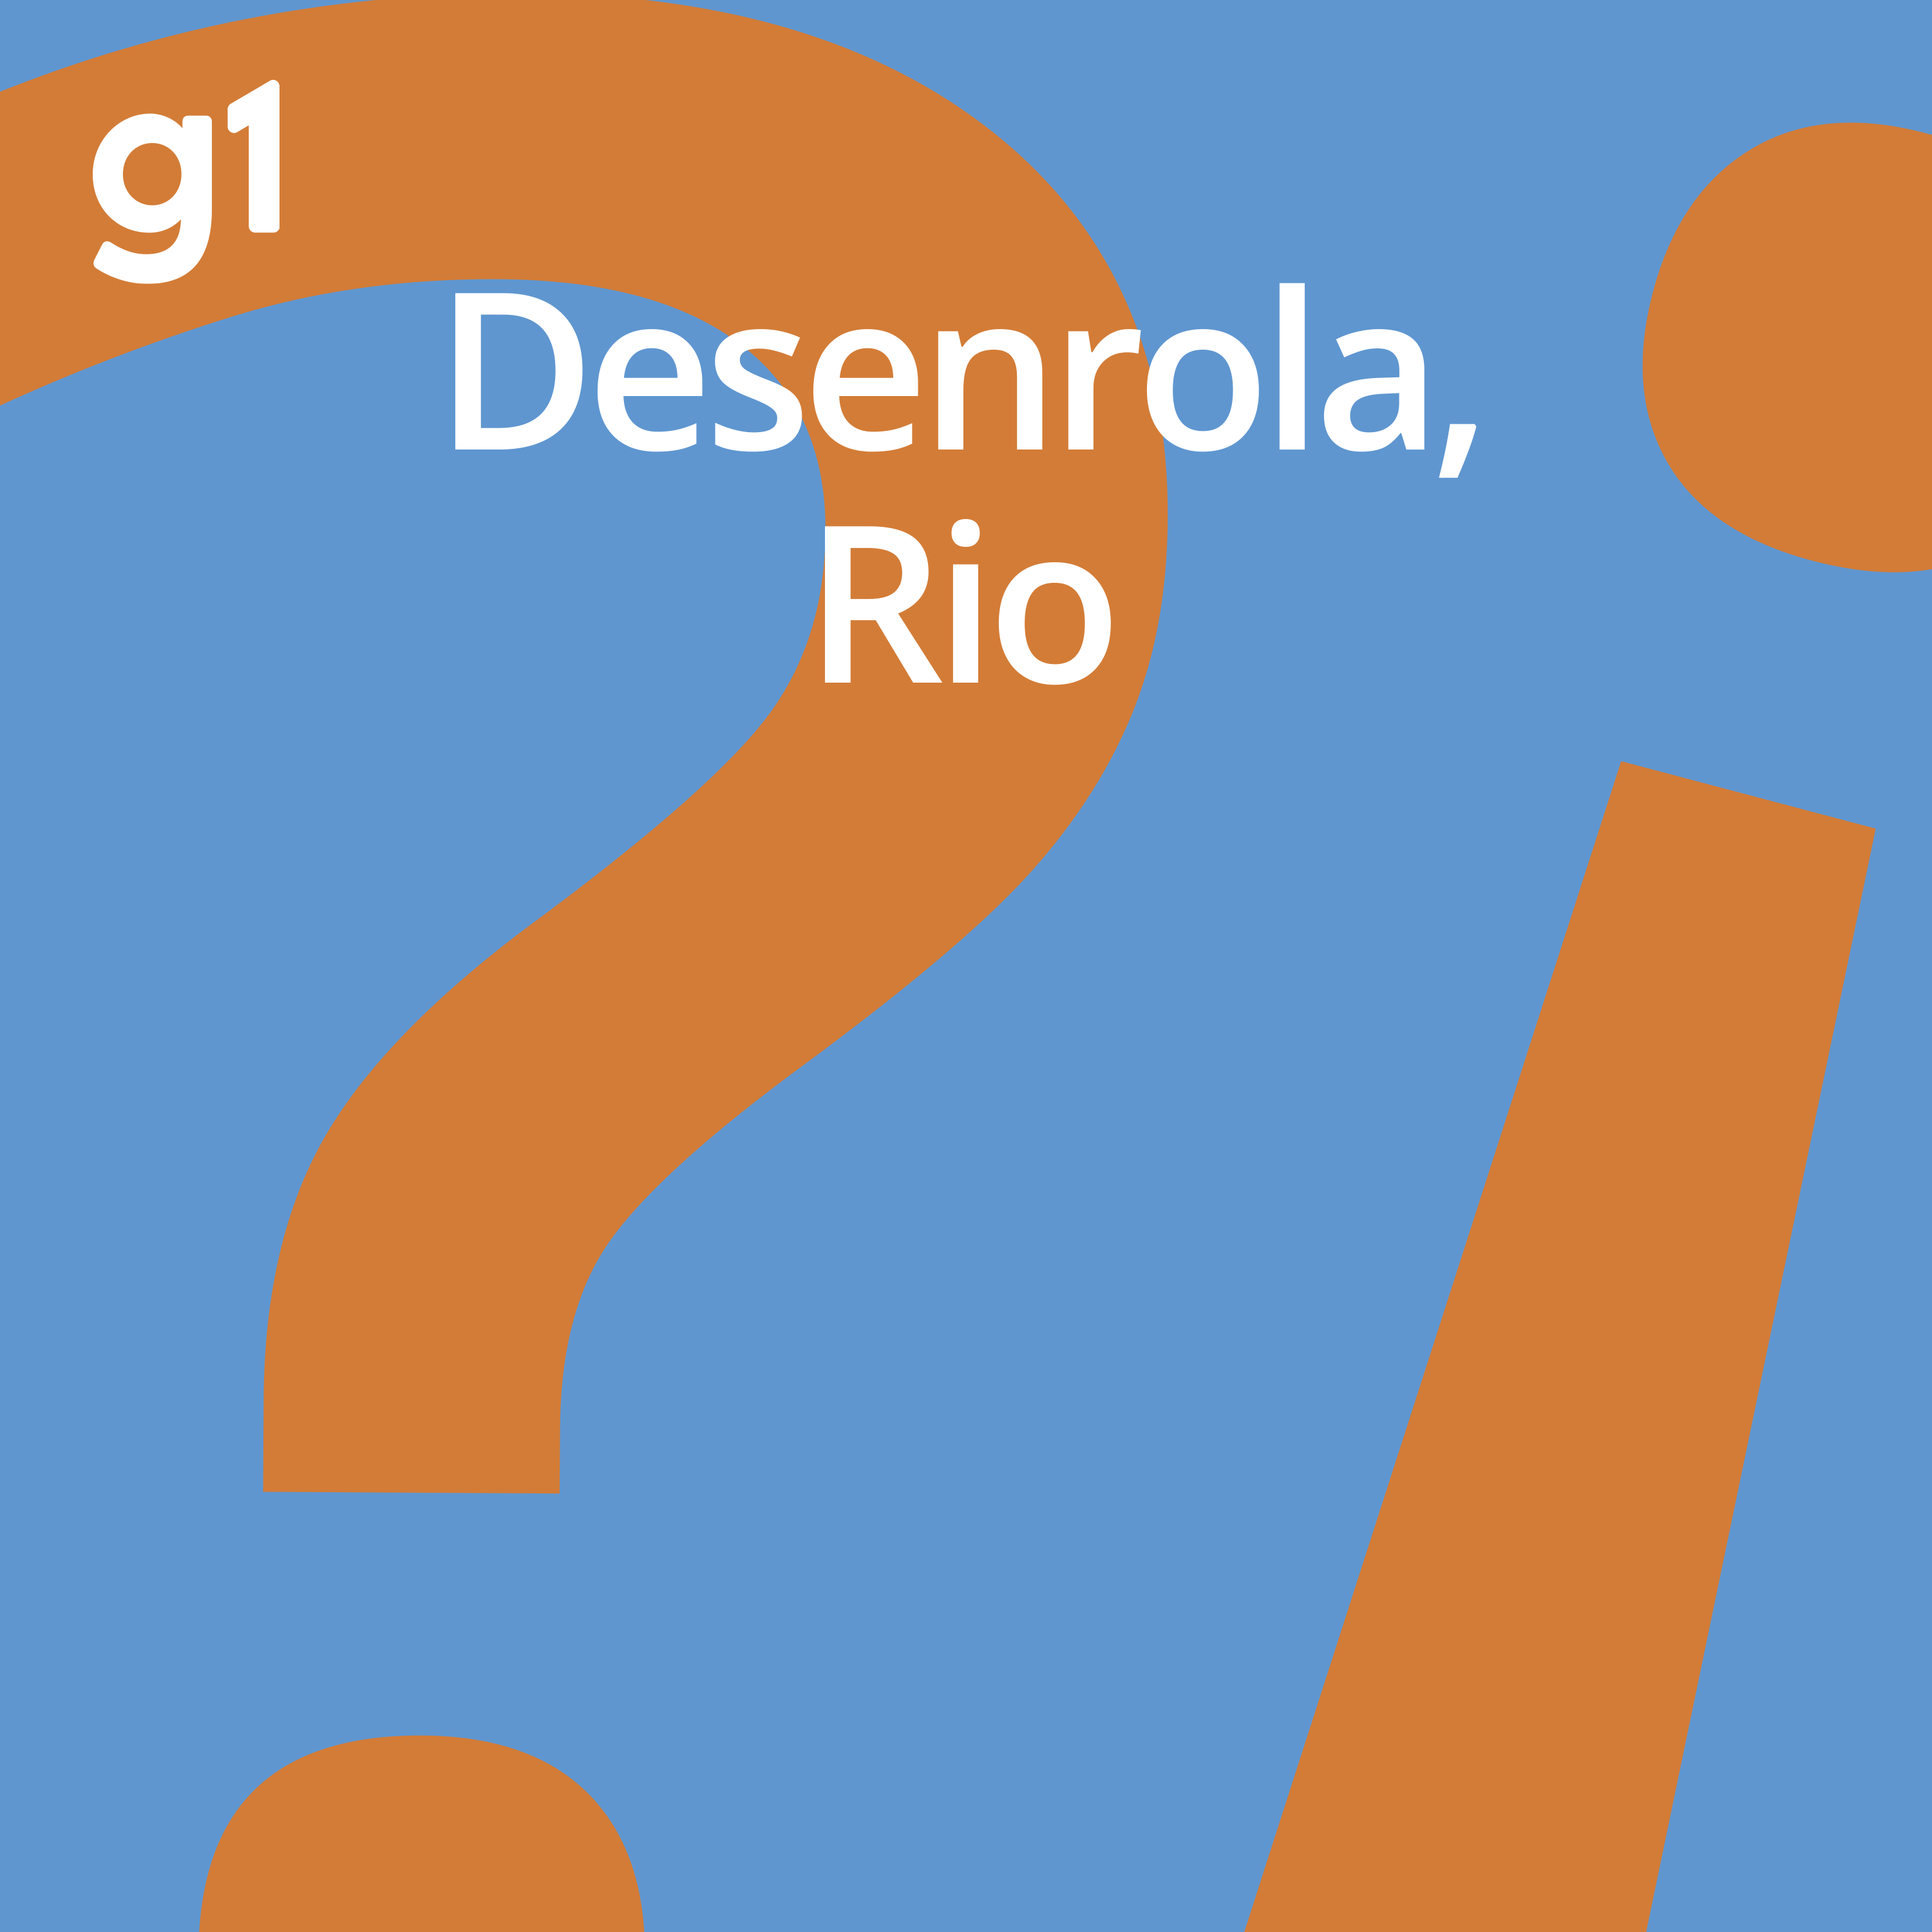 #92 Desenrola, Rio – Uma ilha toda vacinada